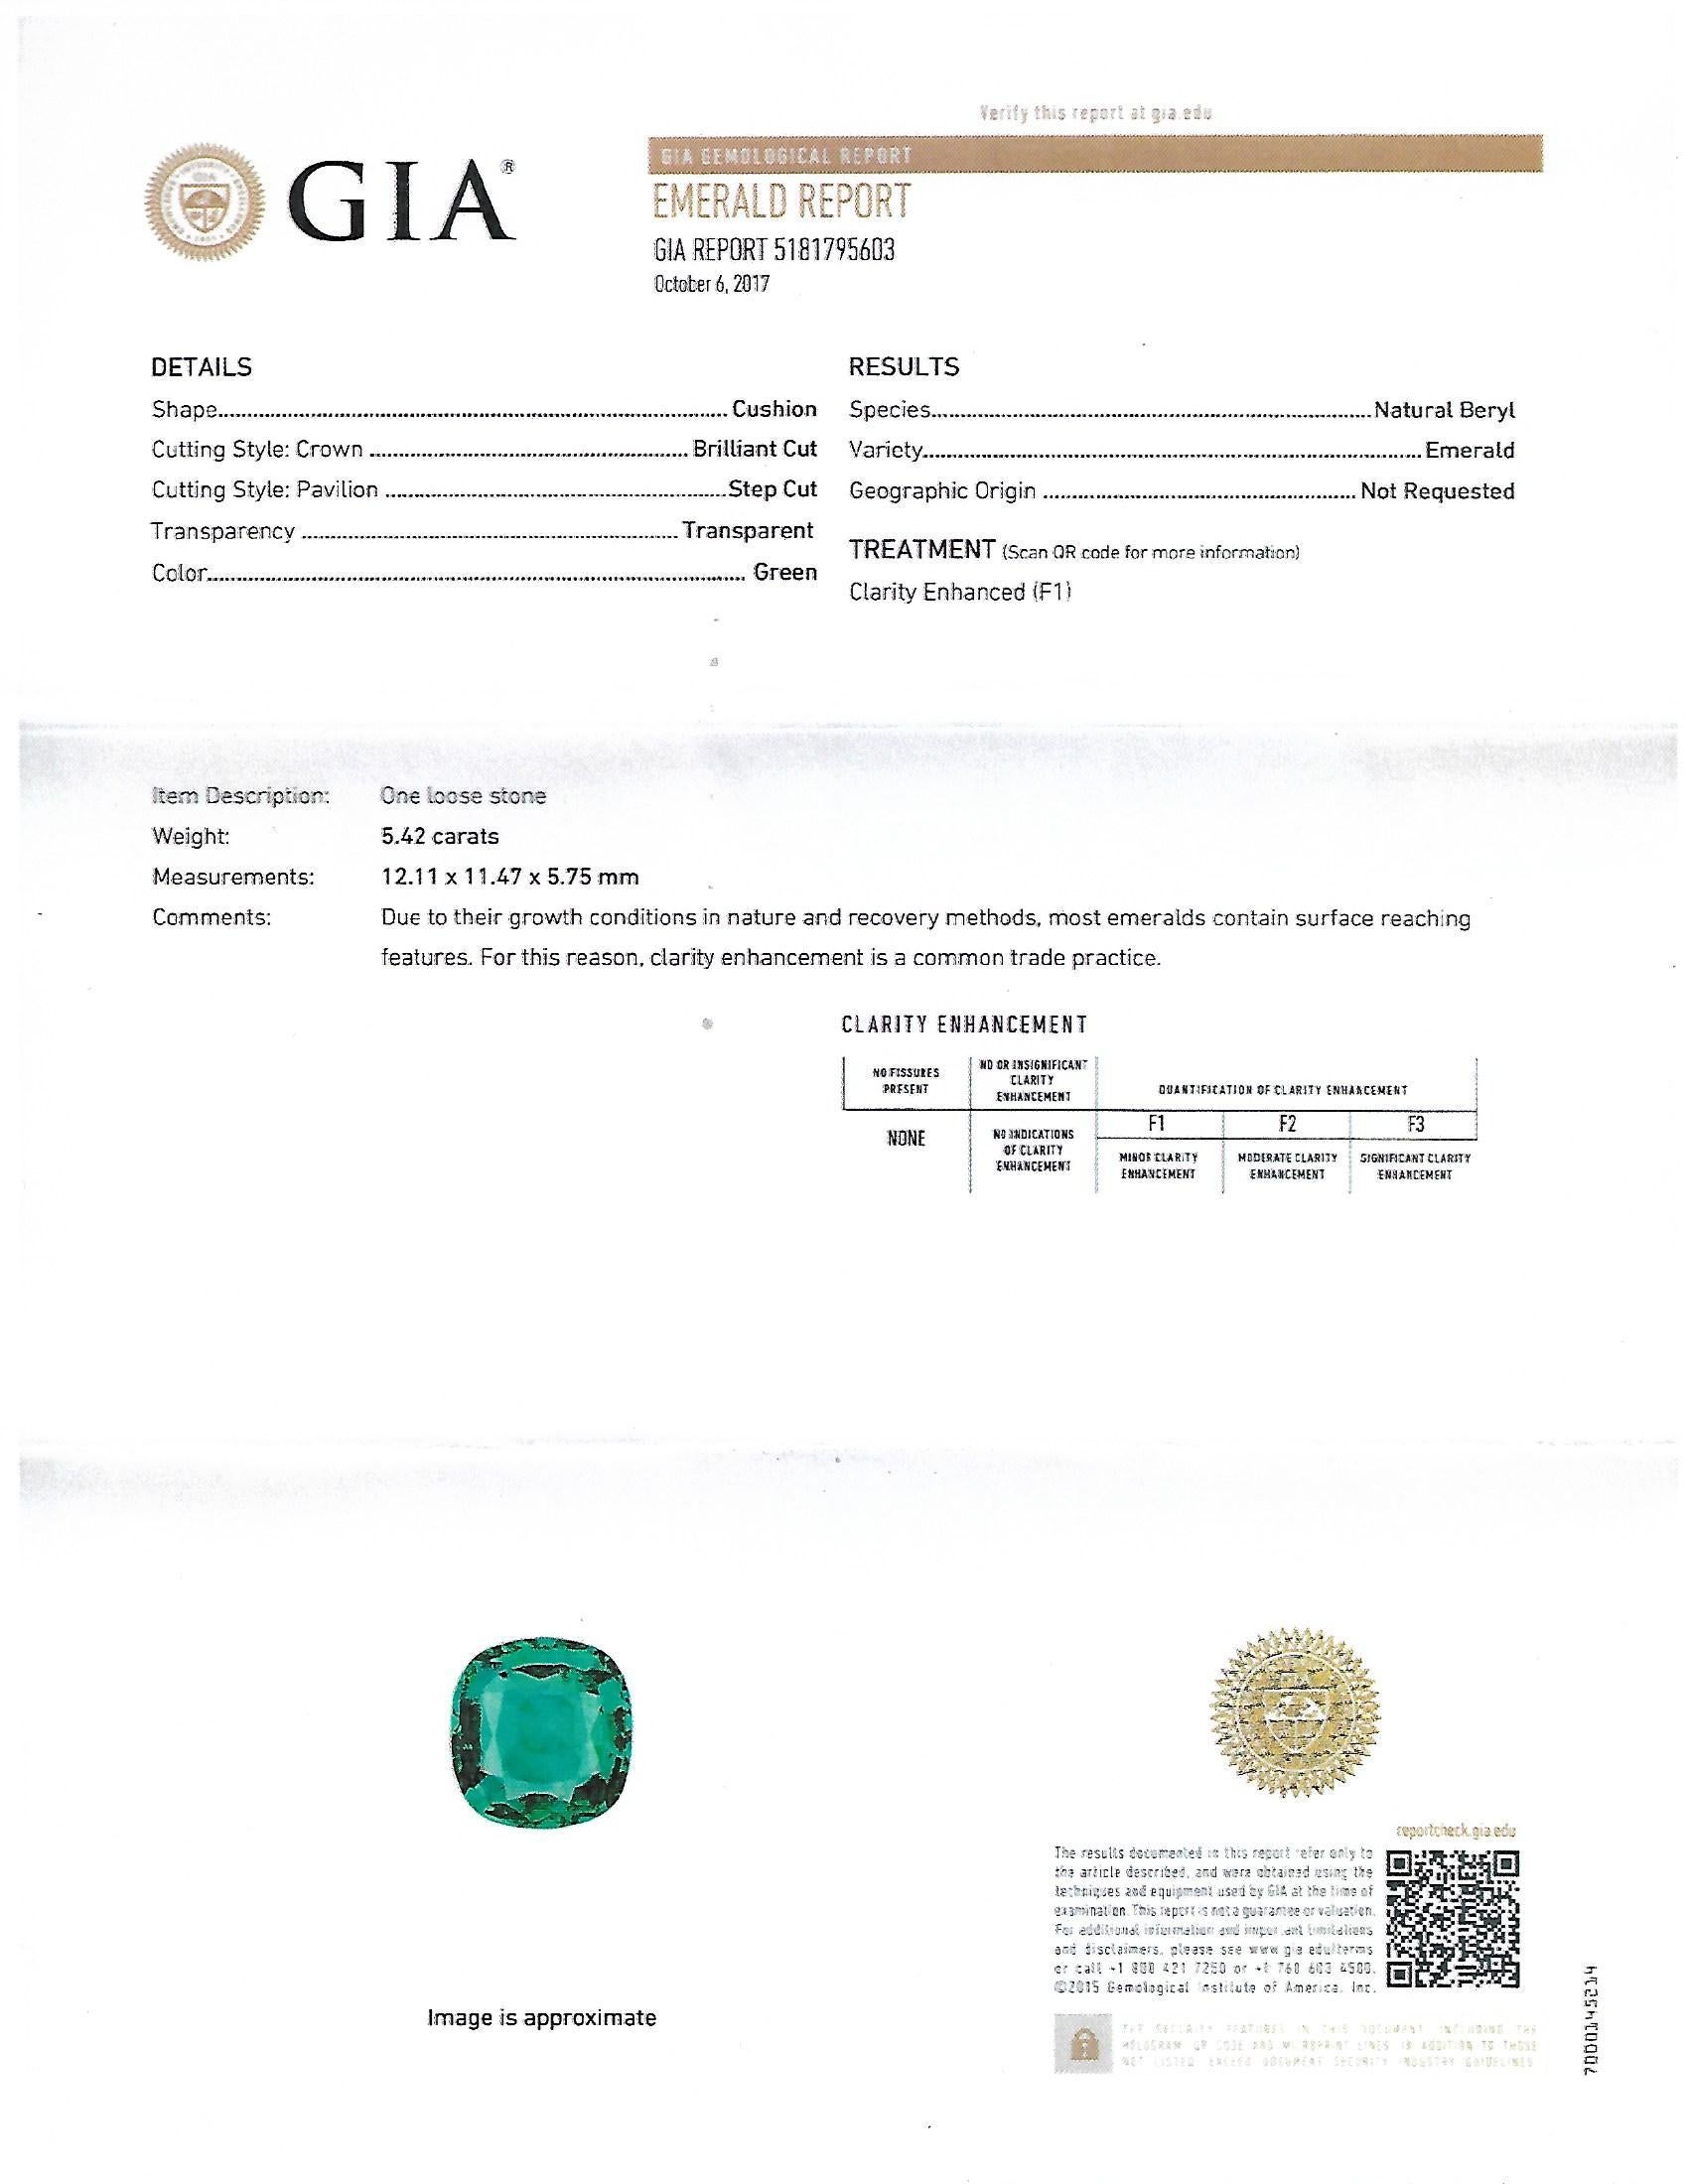 GIA Certified 5.42 Carat Emerald Cushion Cut in 18 Karat Rose Gold Cocktail Ring 3